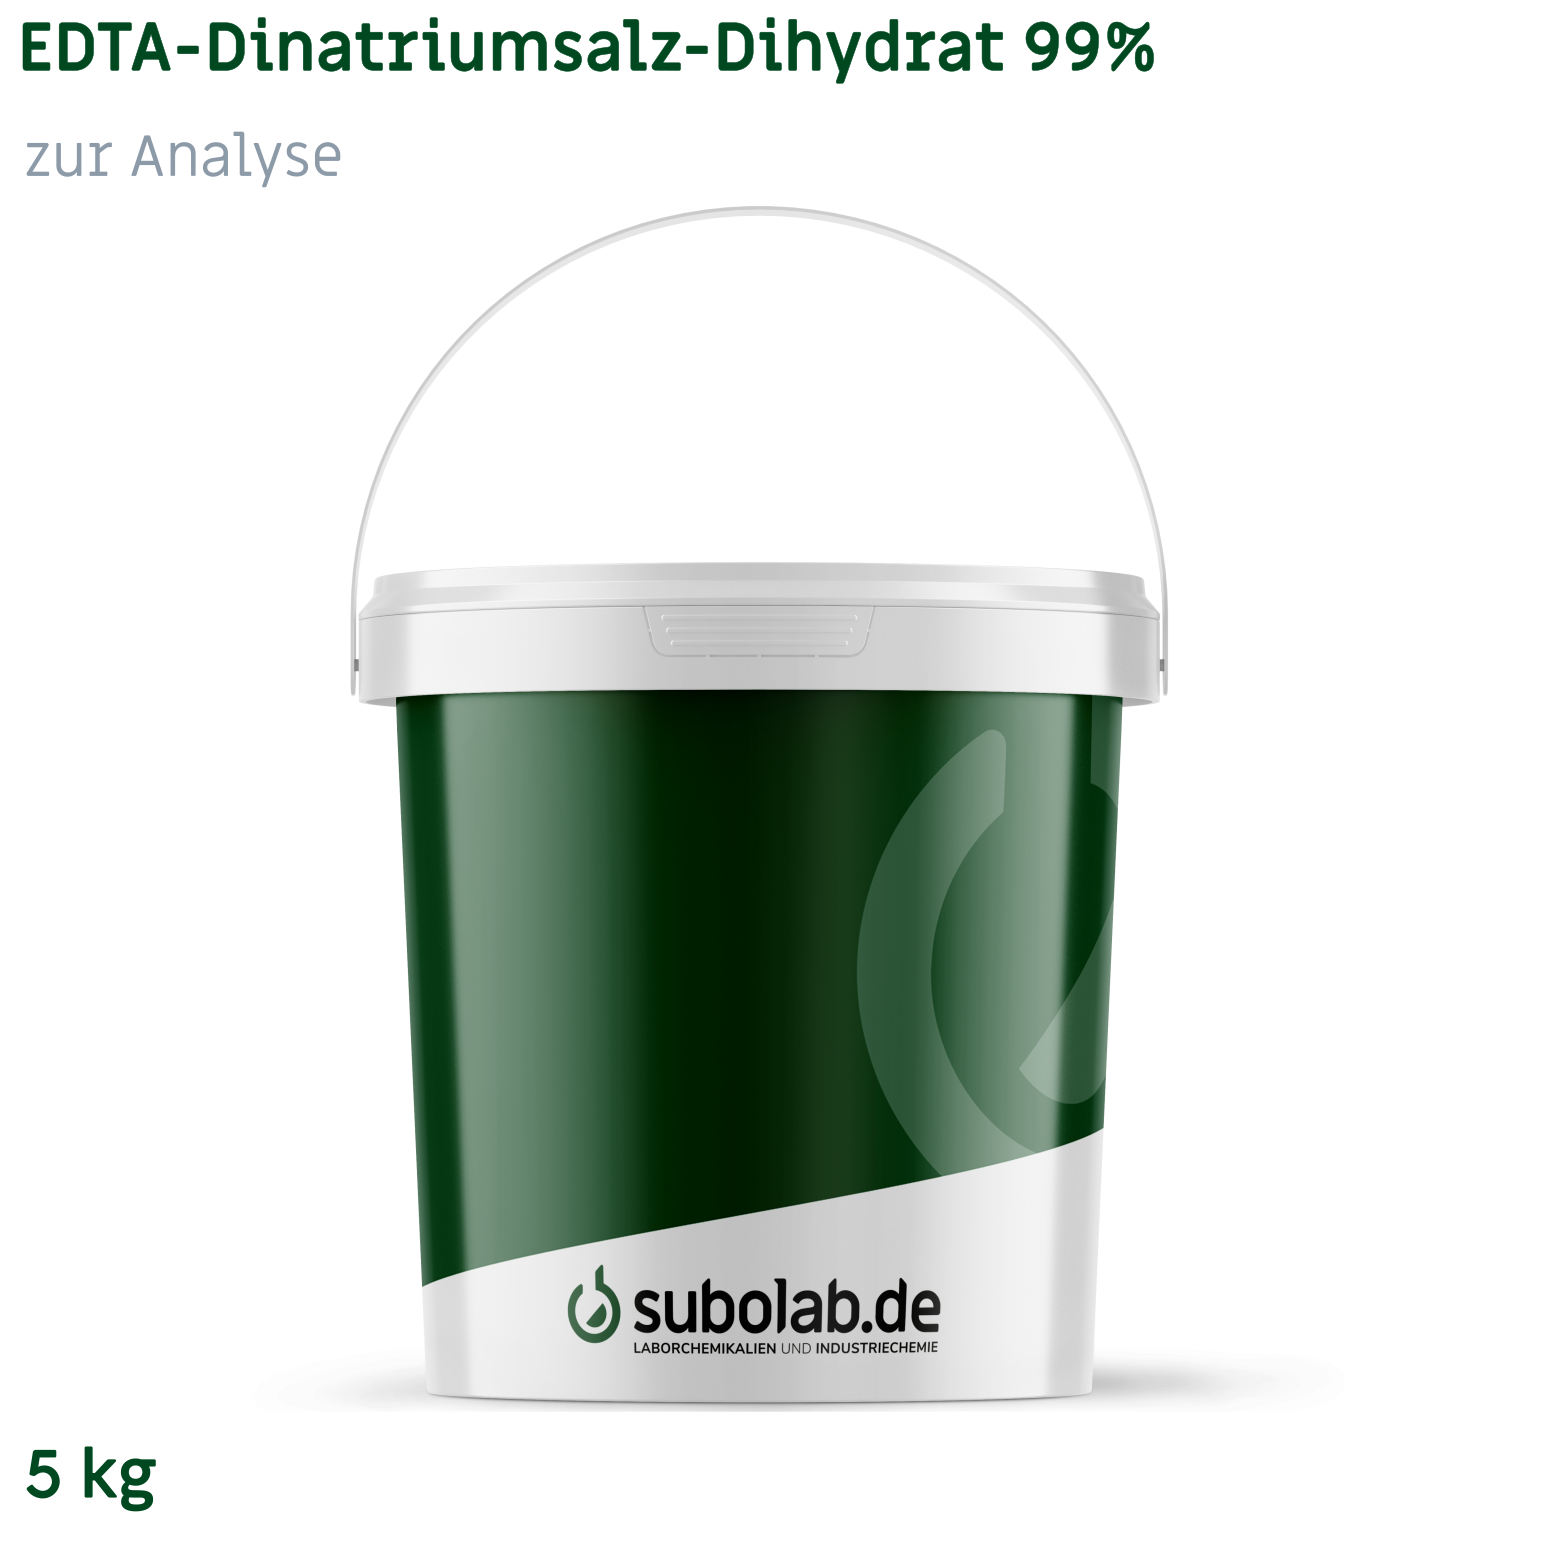 Bild von EDTA - Dinatriumsalz - Dihydrat 99% zur Analyse (5 kg)